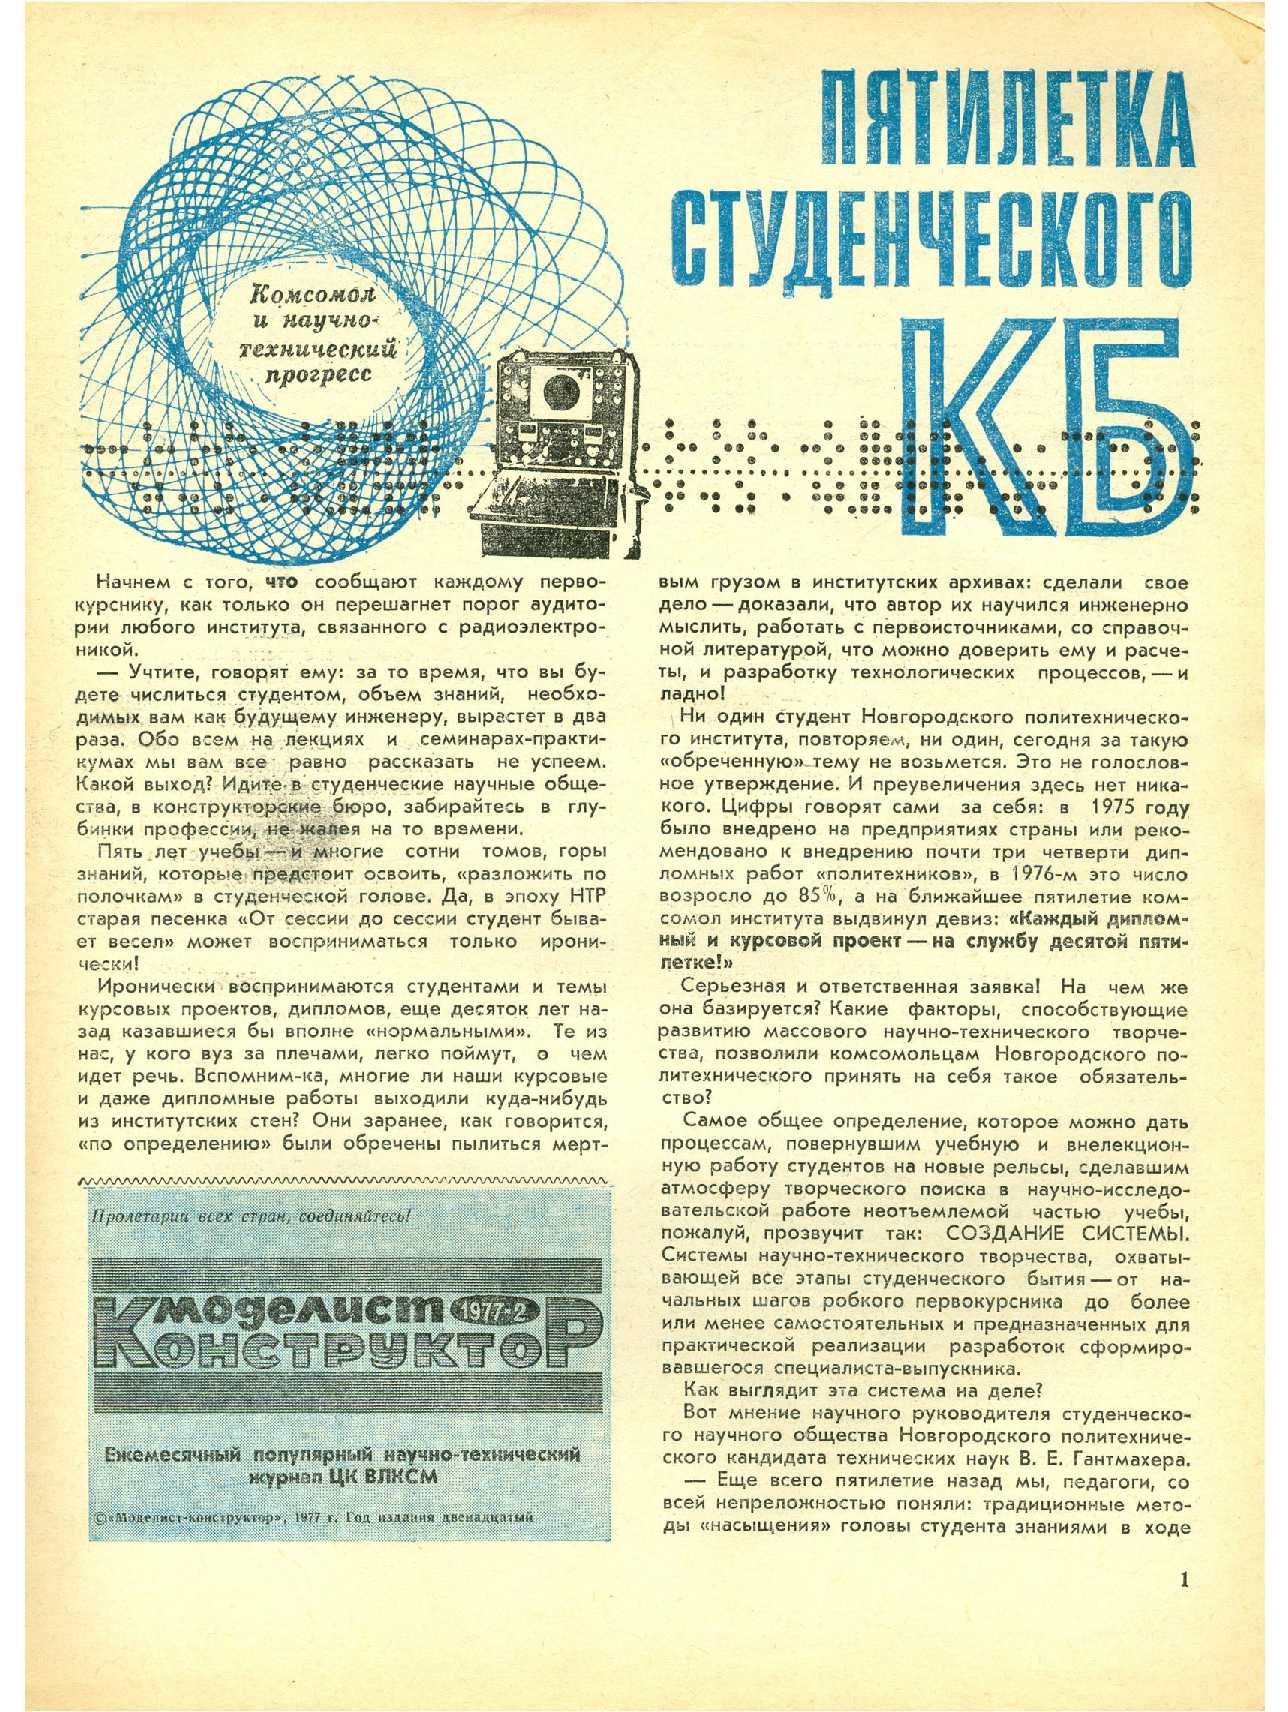 МК 2, 1977, 1 c.